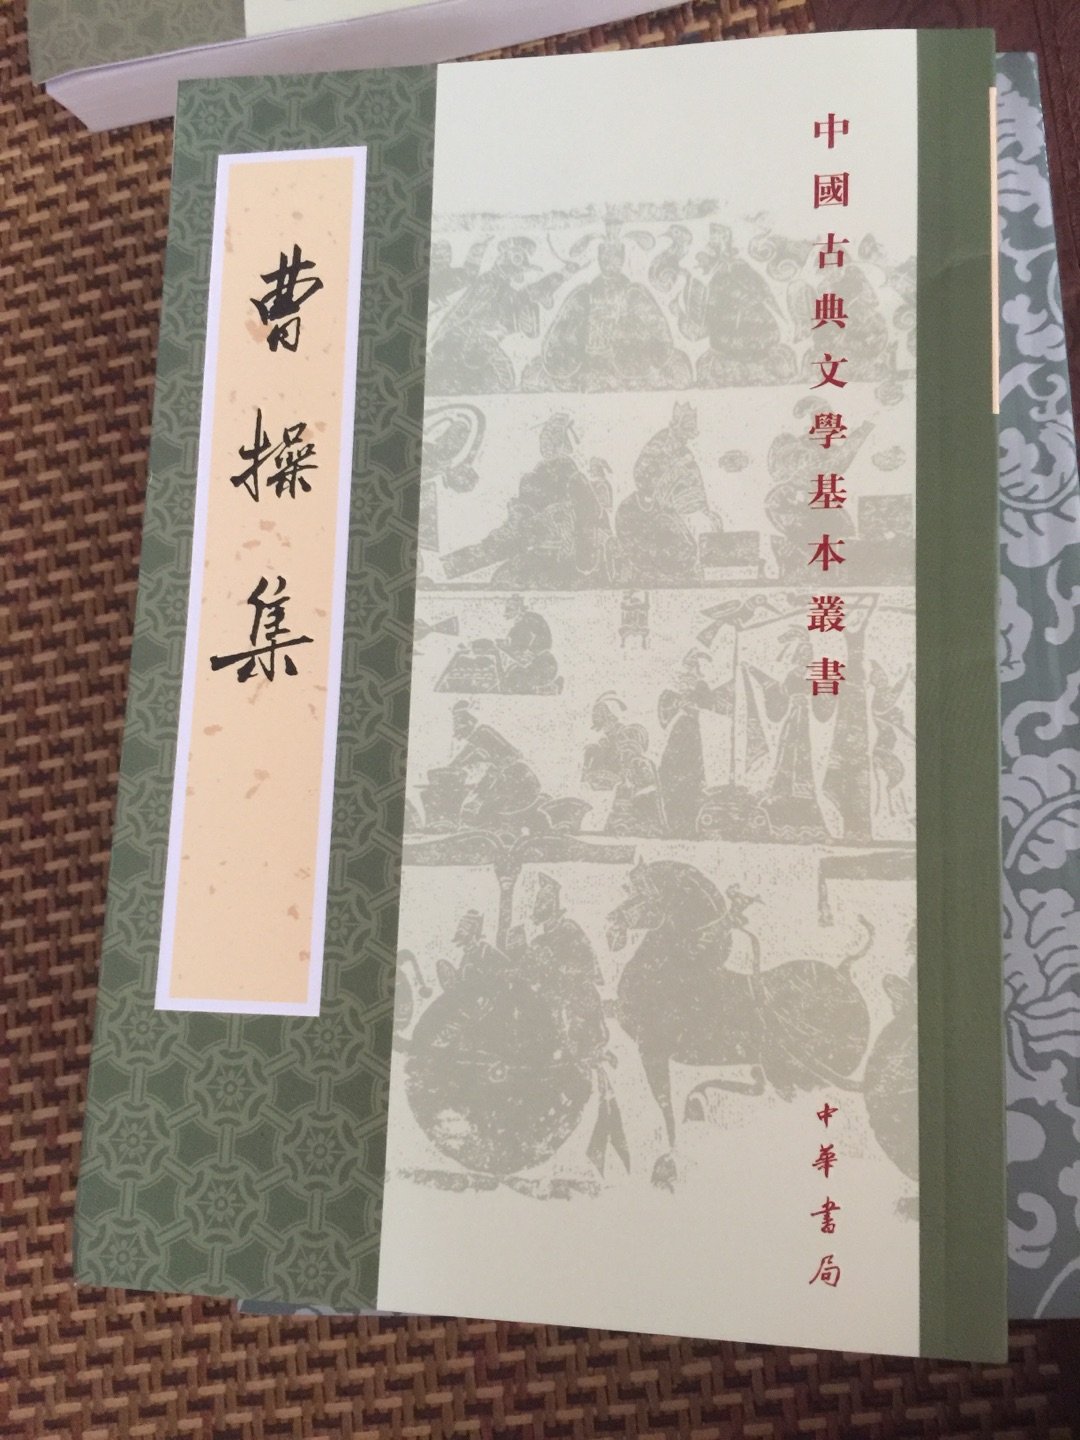 曹操是东汉末年著名的政治家军事家文学家。这本书是他的集子。